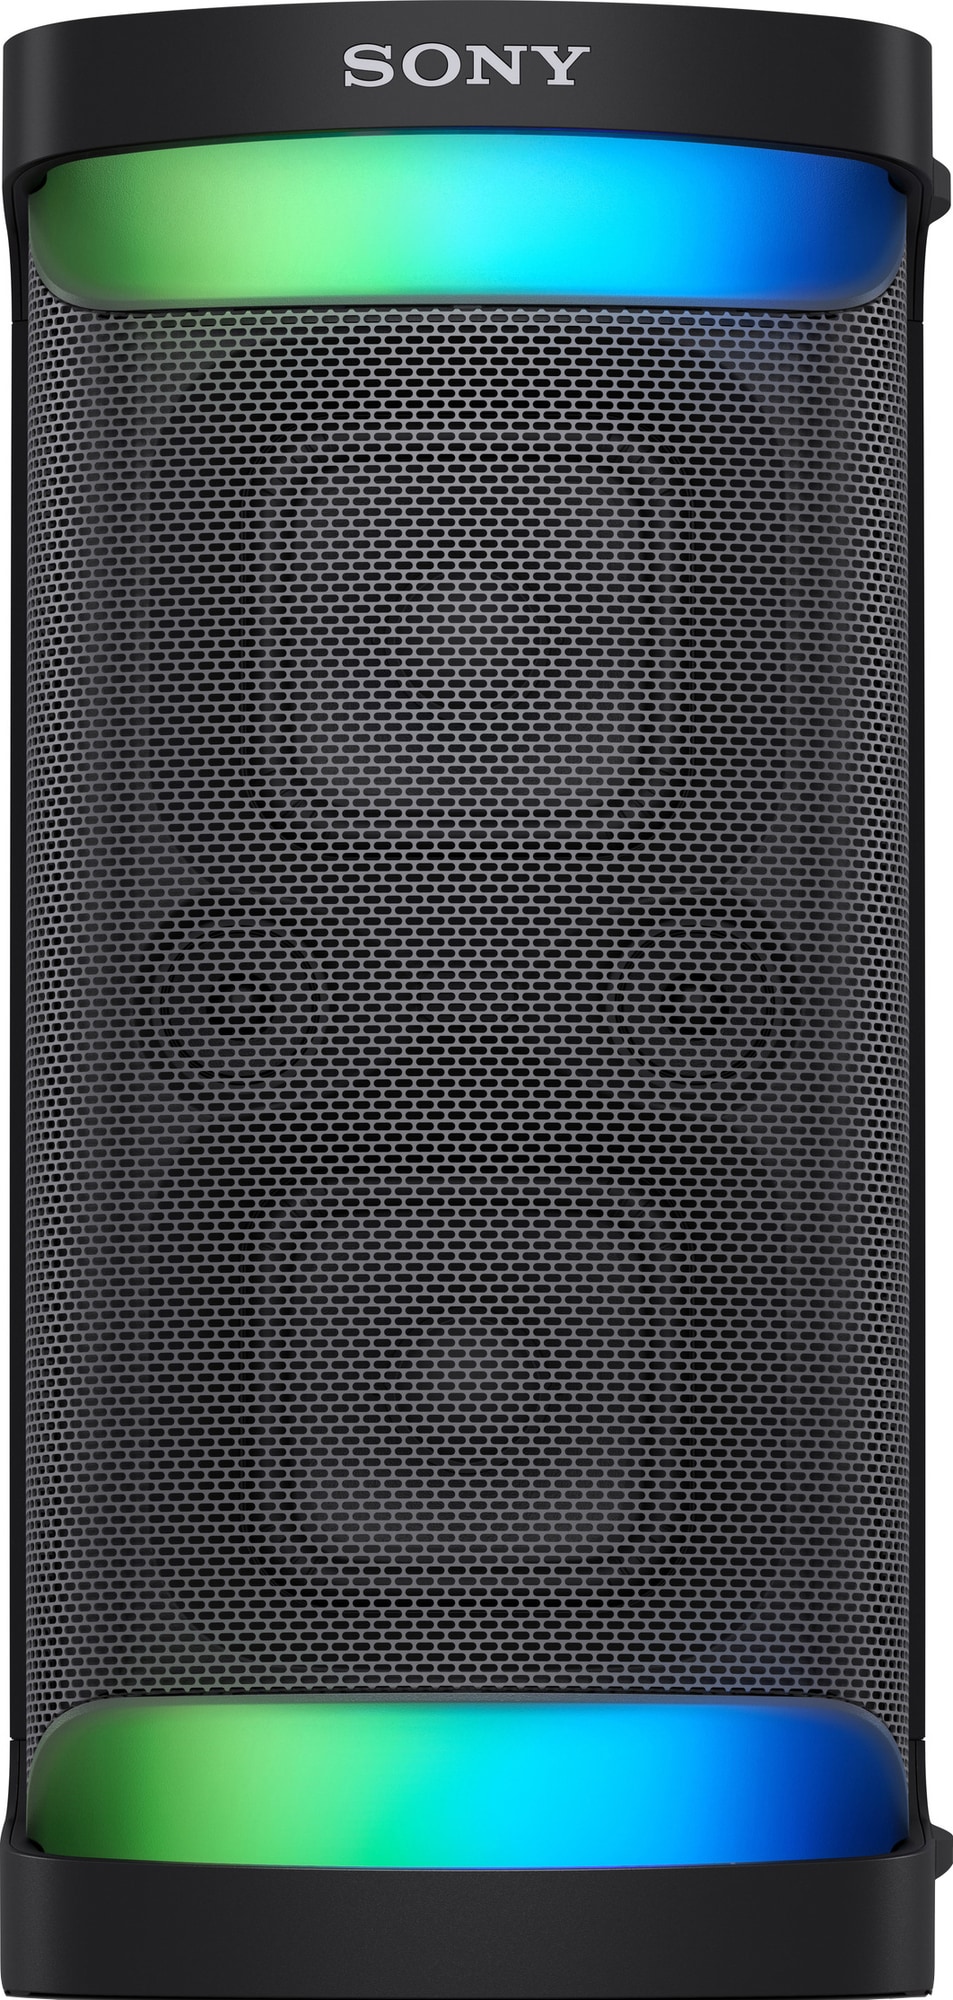 Sony portabel trådlös högtalare SRS-XP500 (svart) - Elgiganten